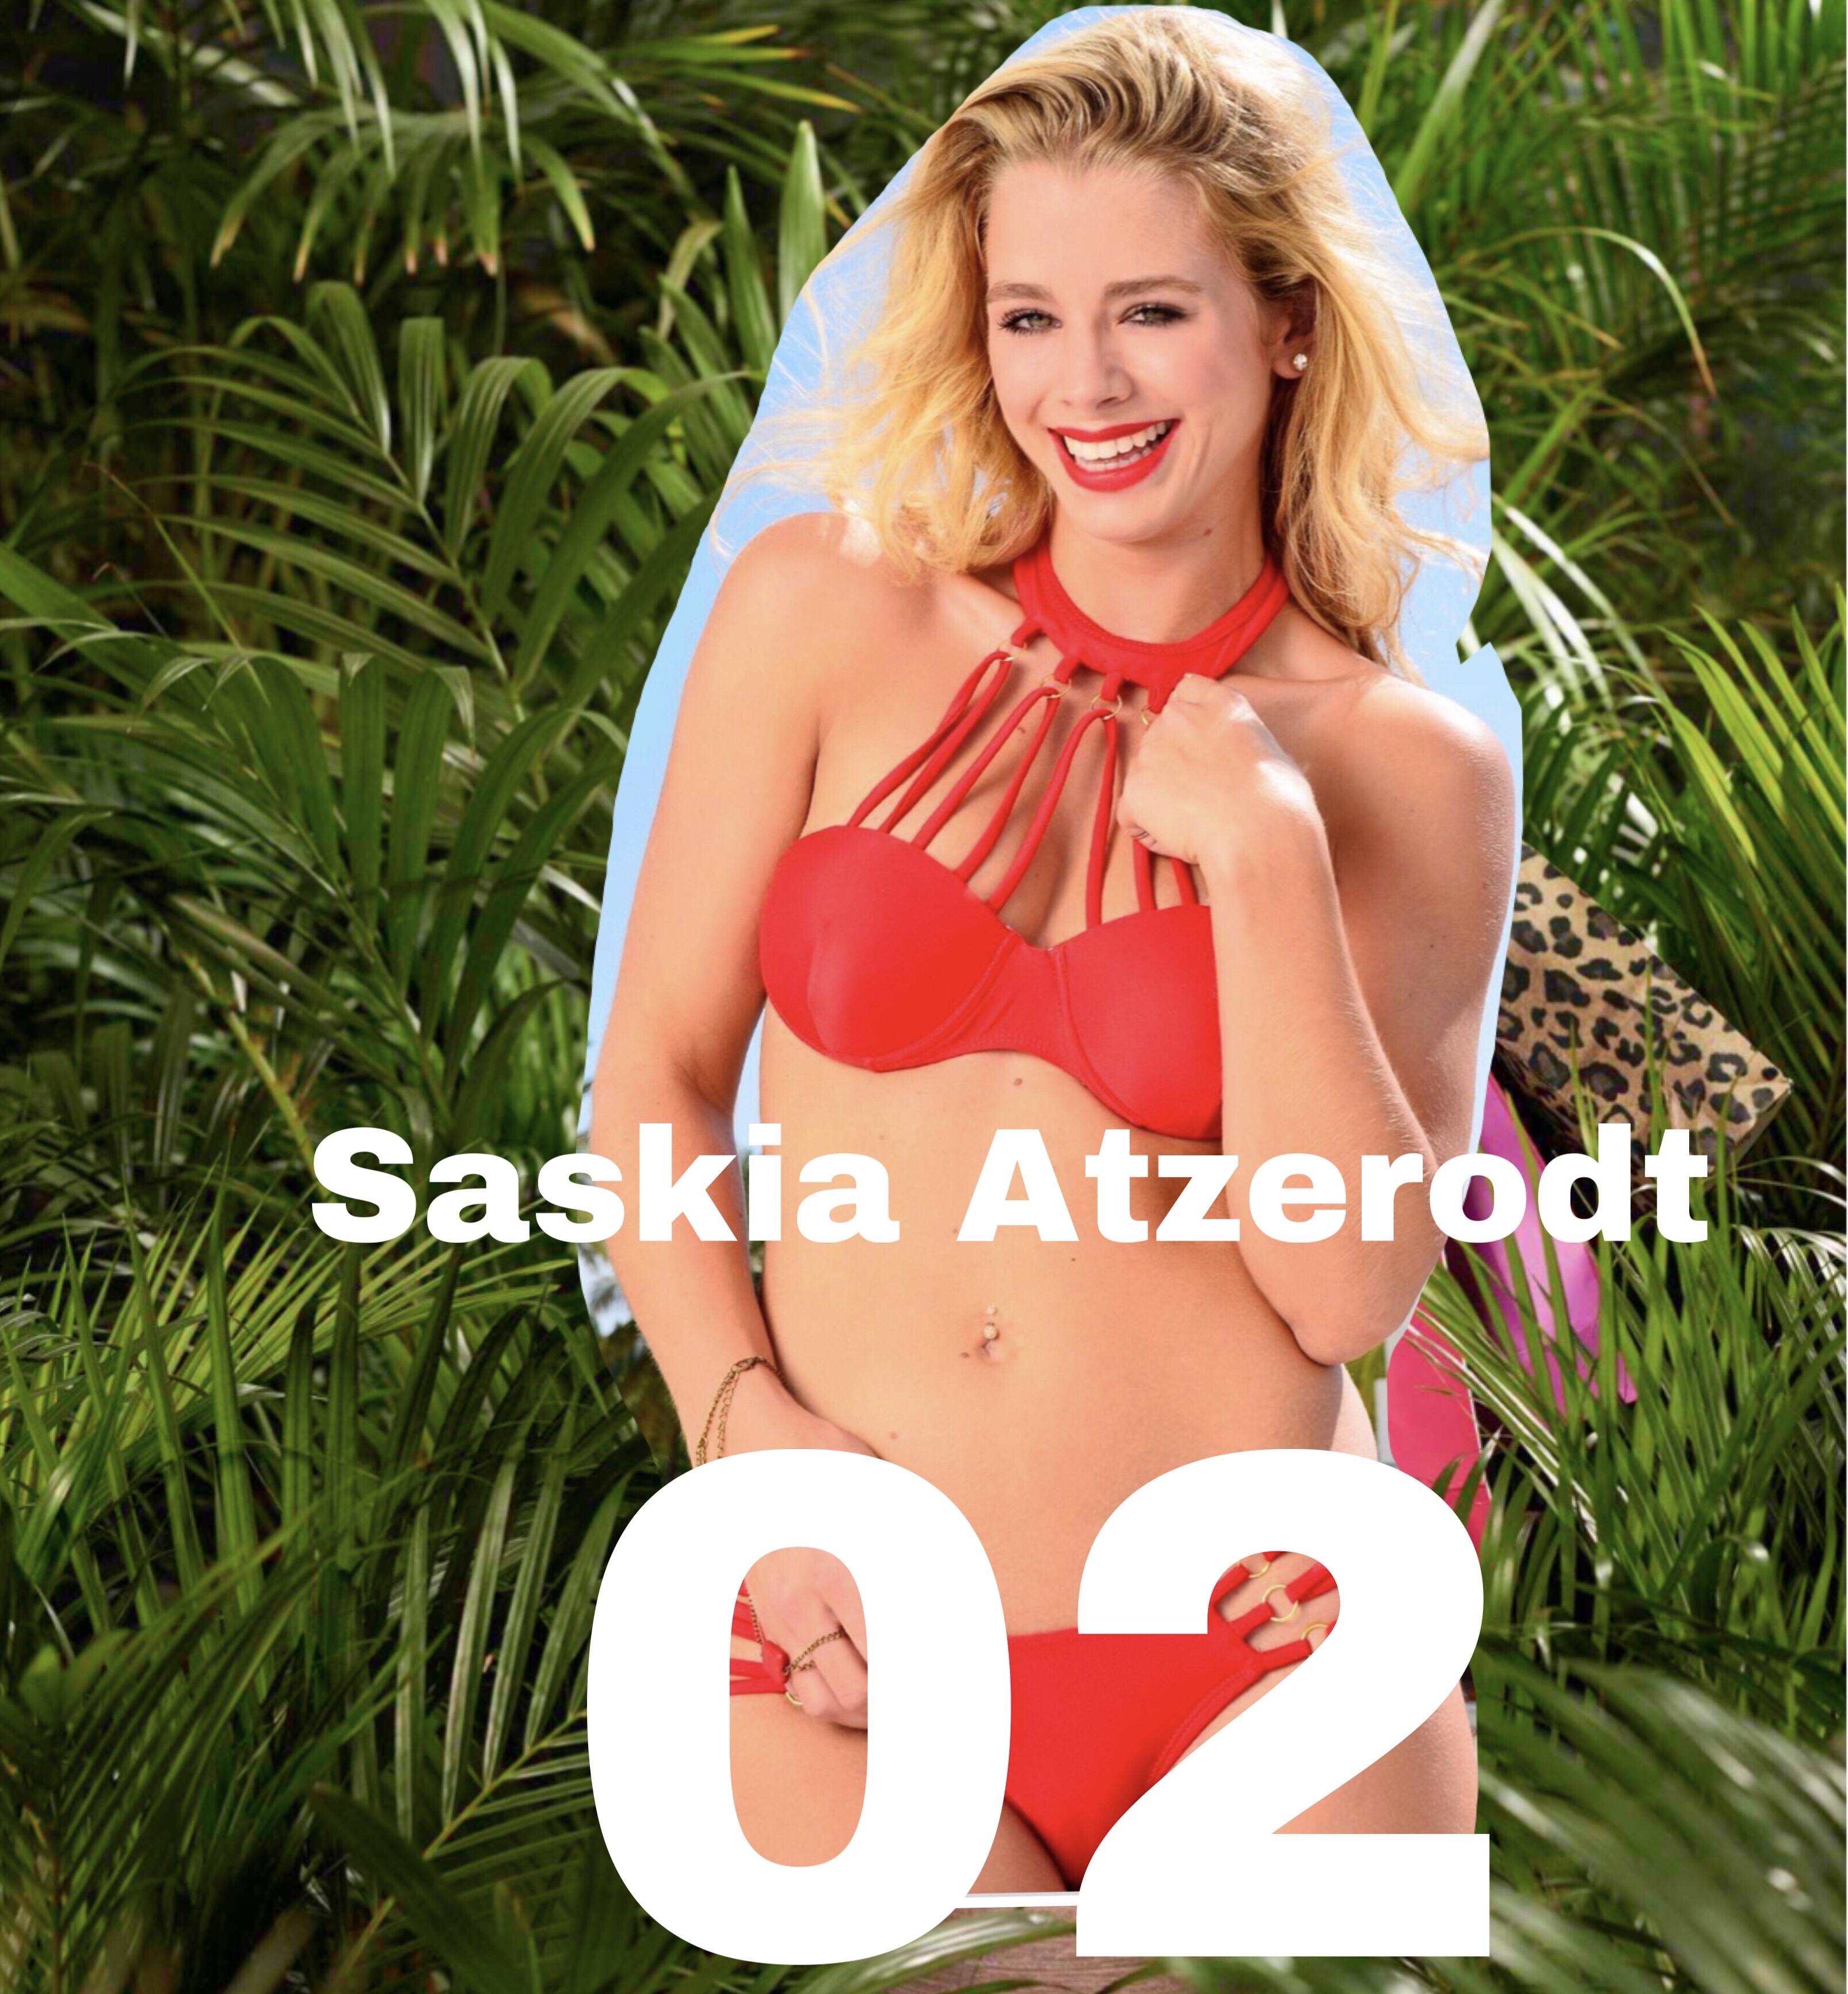 02. Saskia Atzerodt